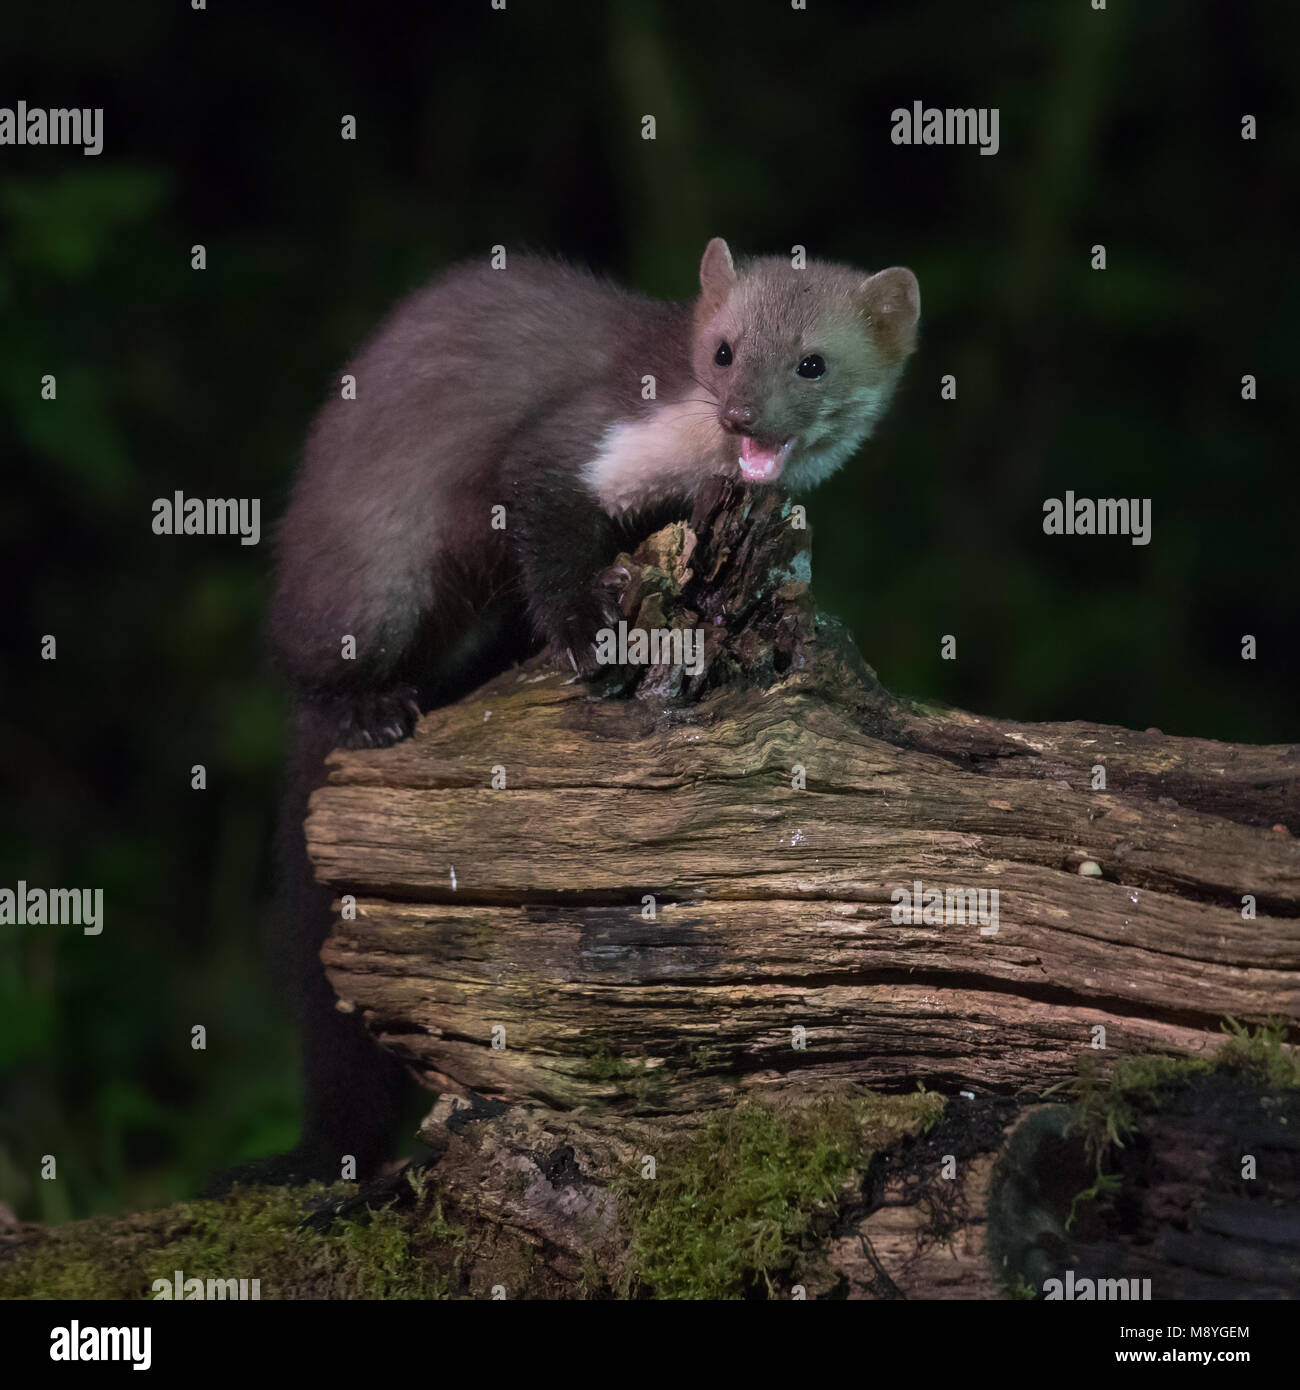 Hêtre sauvage insaisissable marten (Martes foina) sur log in habitat naturel pendant la nuit. Ce petit prédateur nocturne est indispensable pour l'équilibre écologique Banque D'Images